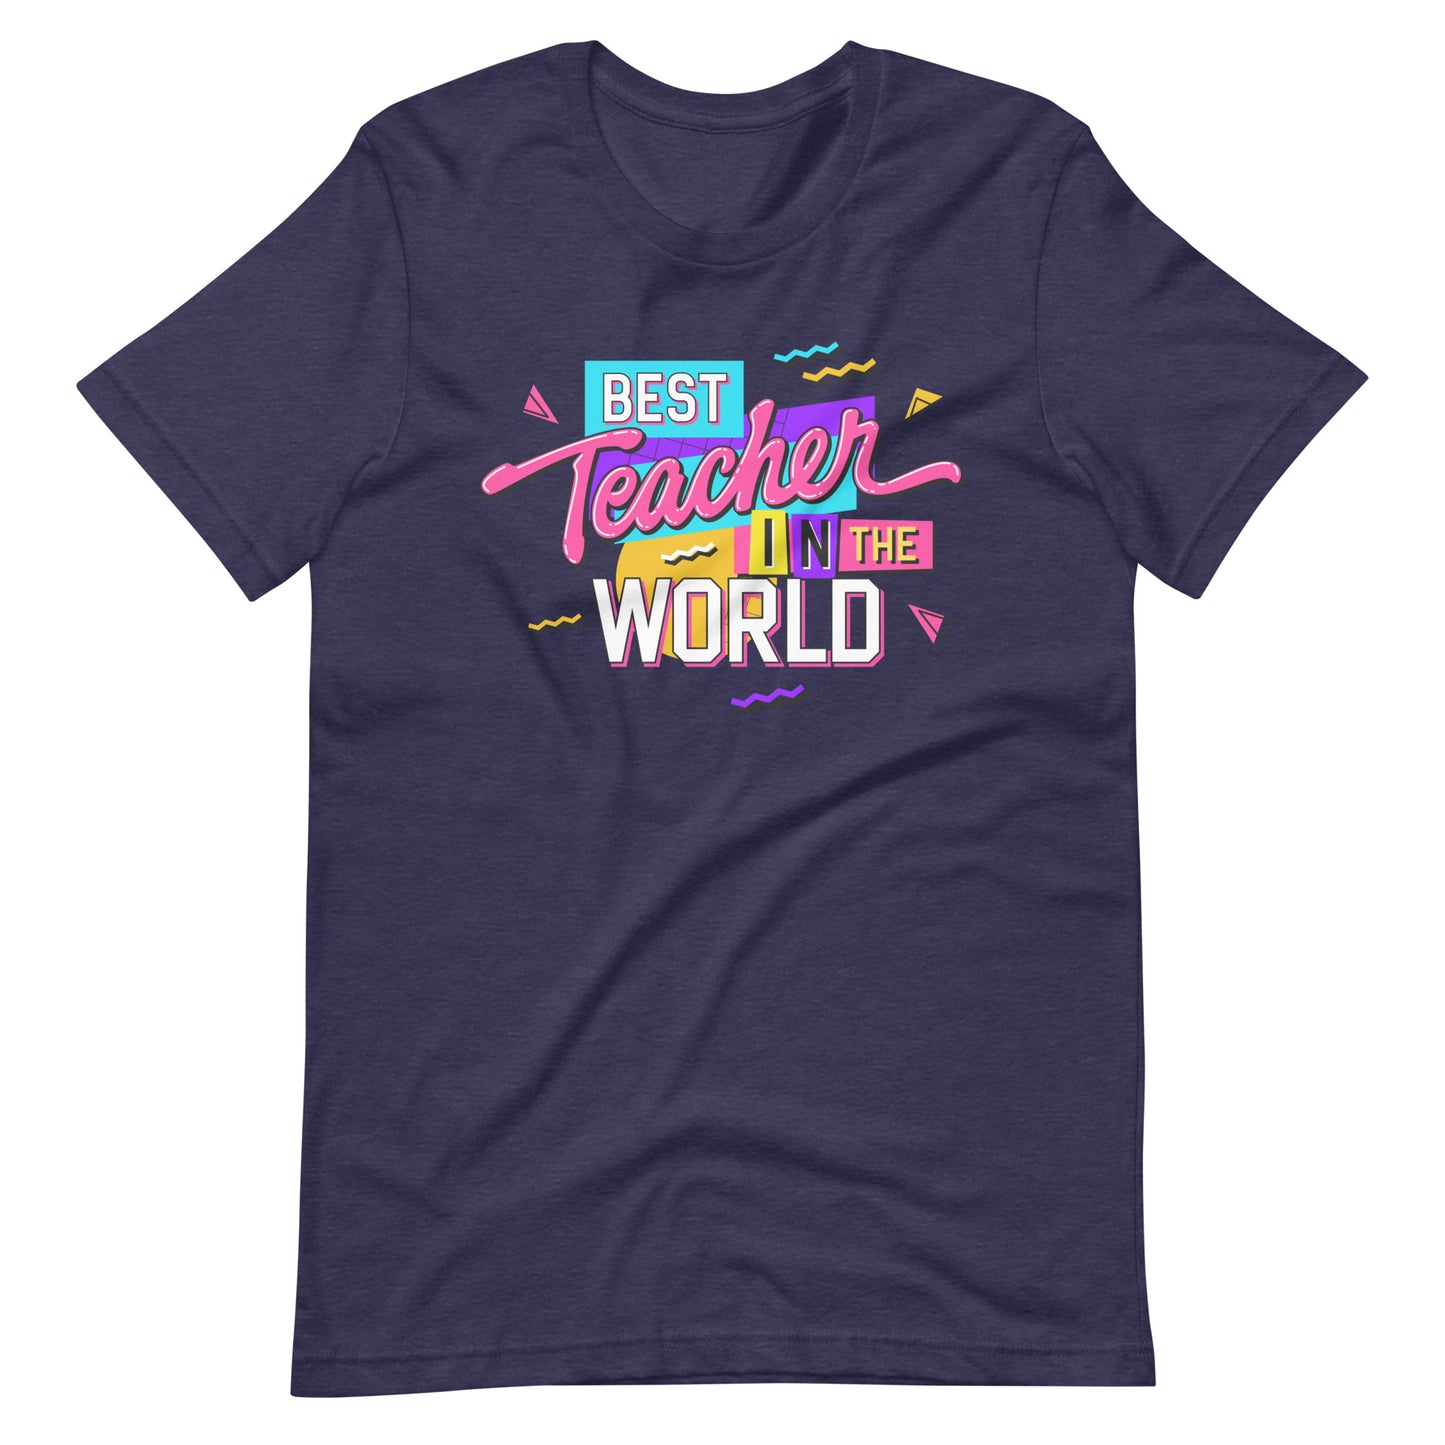 Best Teacher in the World - T-Shirt